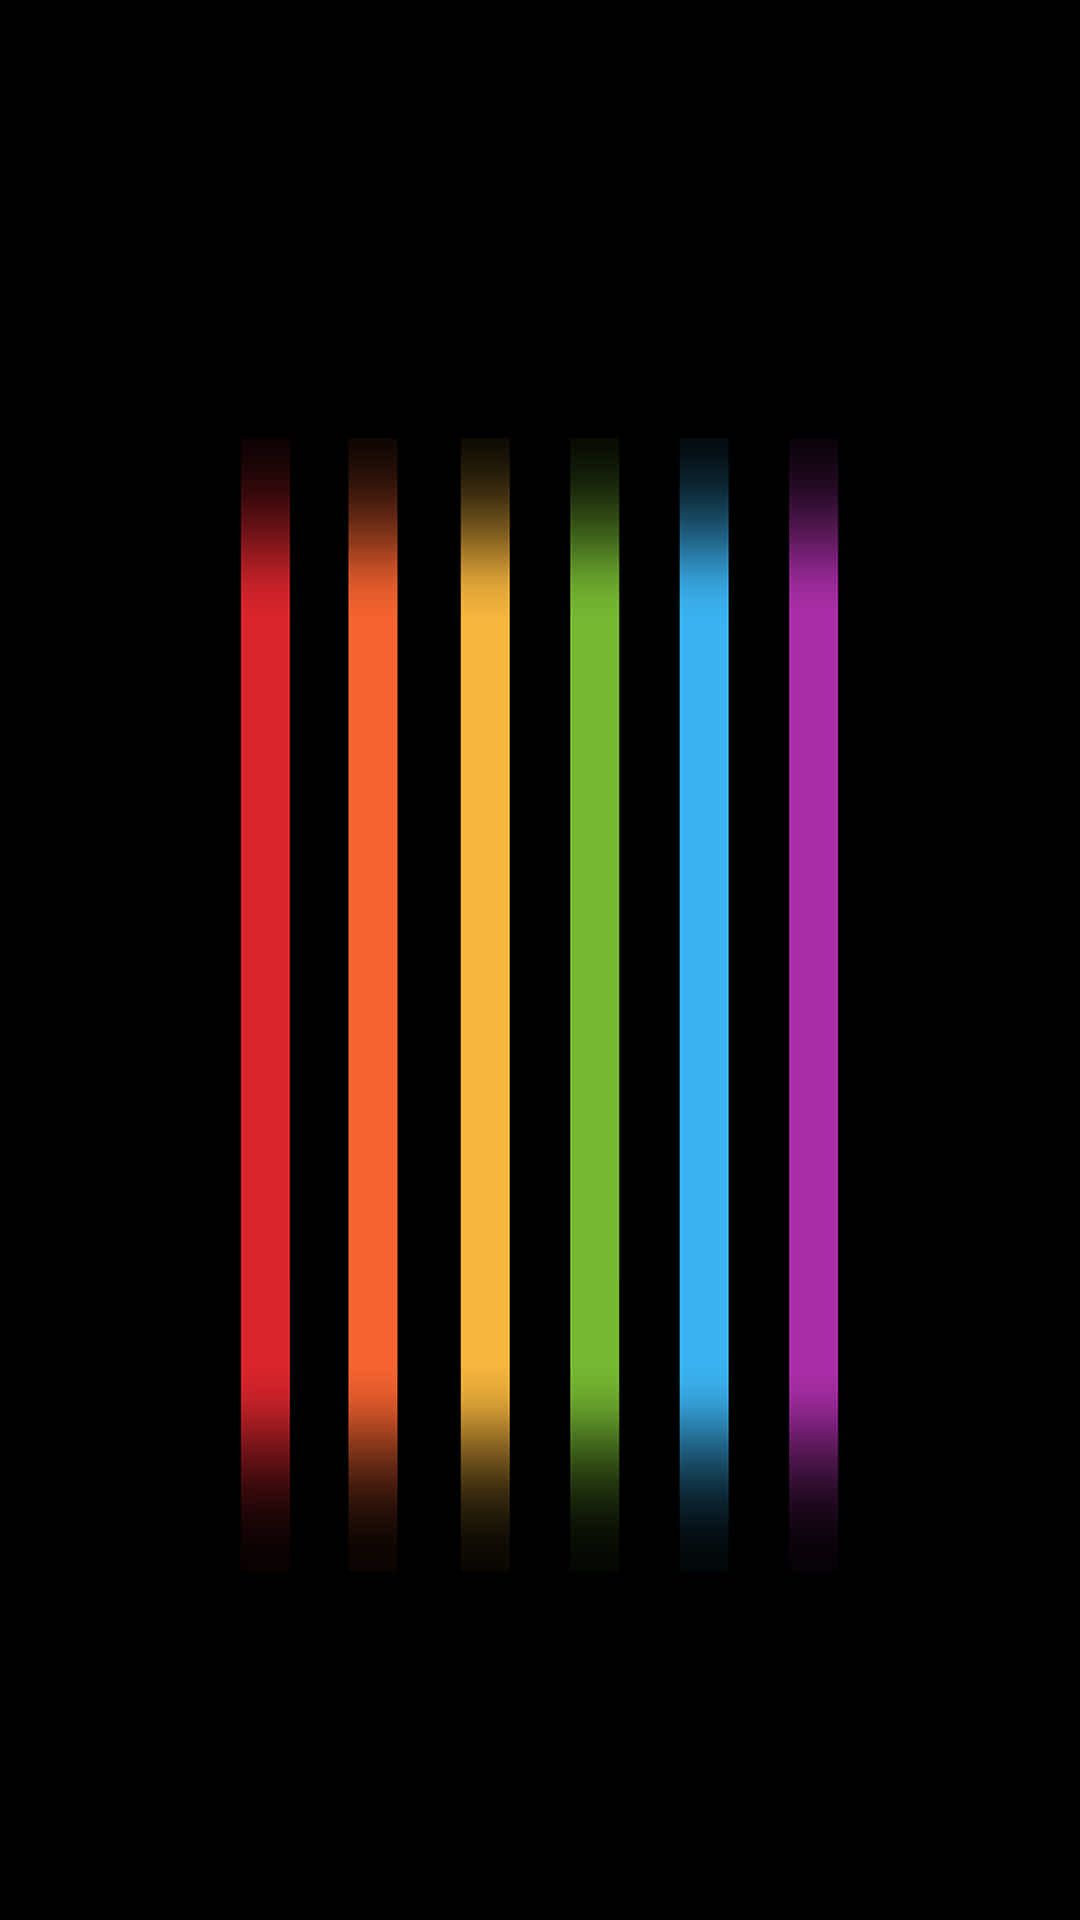 fond d'écran gay pride iphone,noir,violet,rouge,vert,lumière